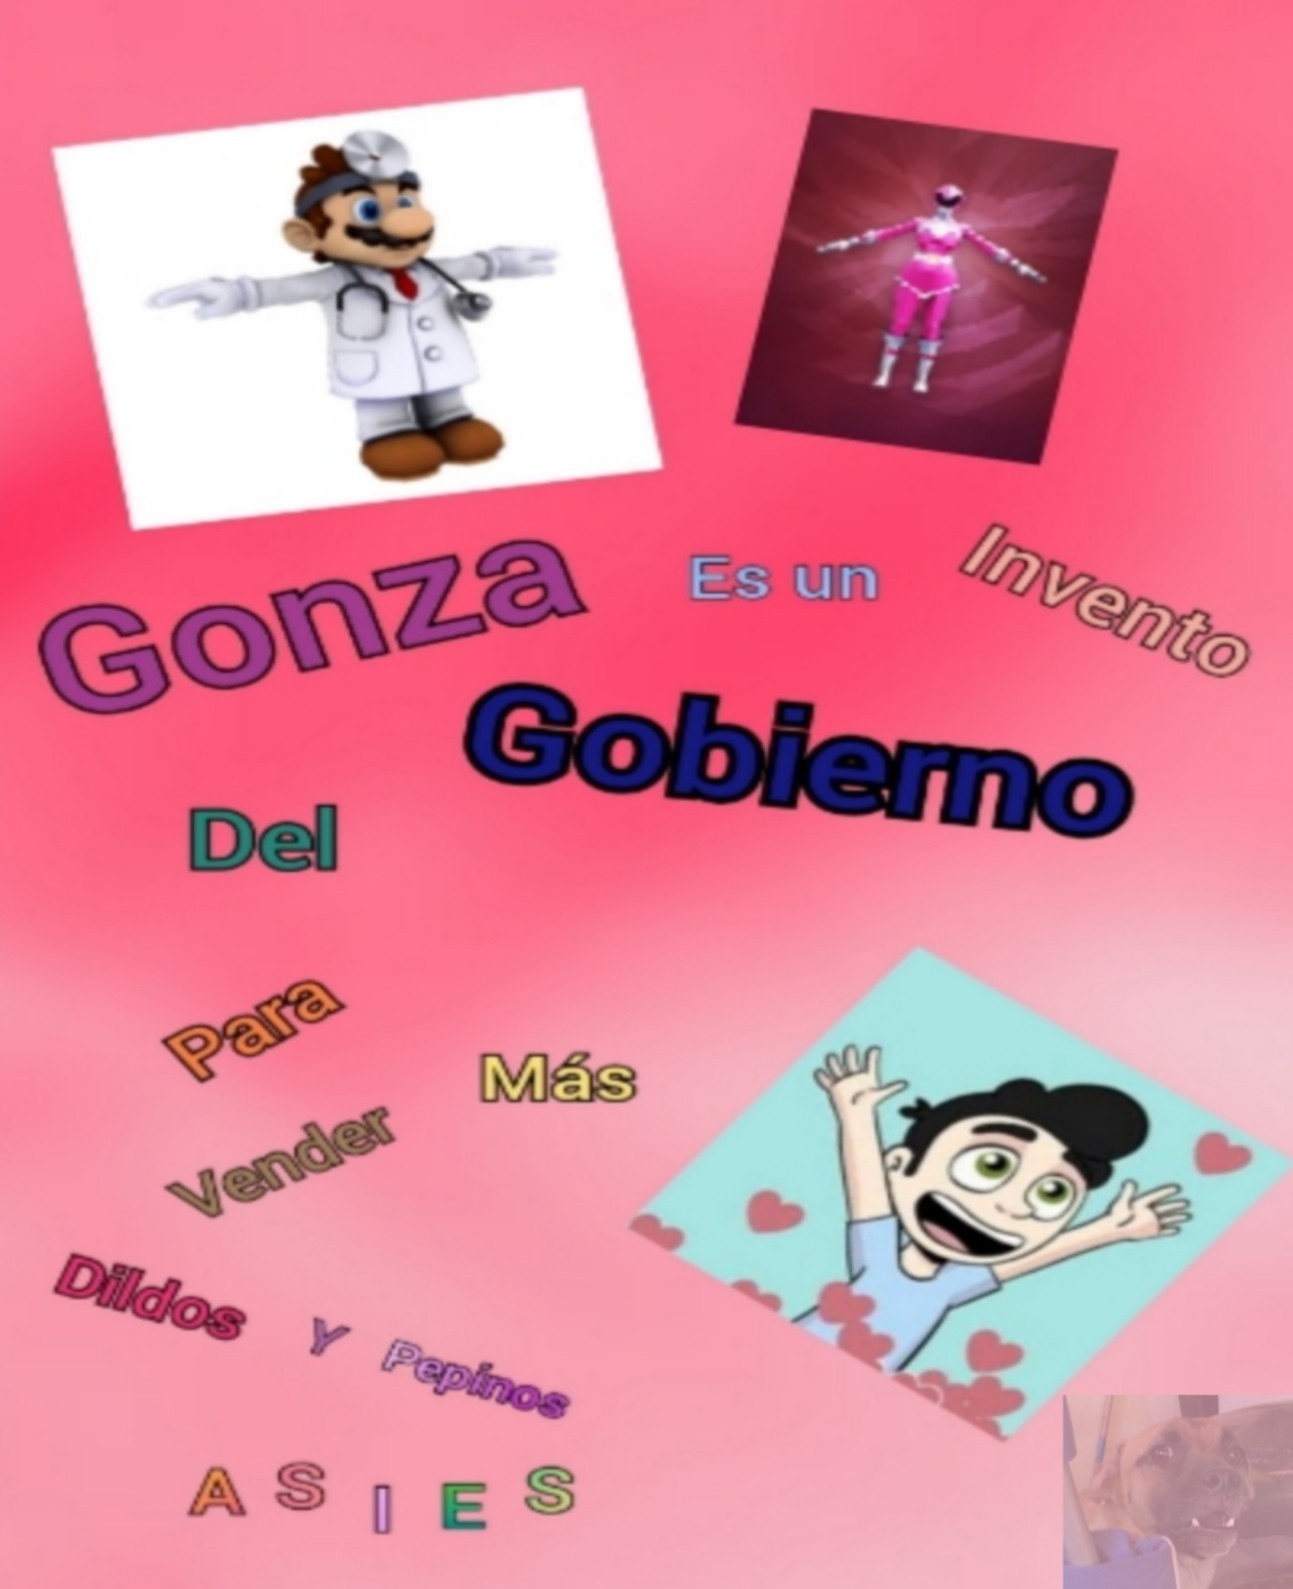 Ste Gonza - meme